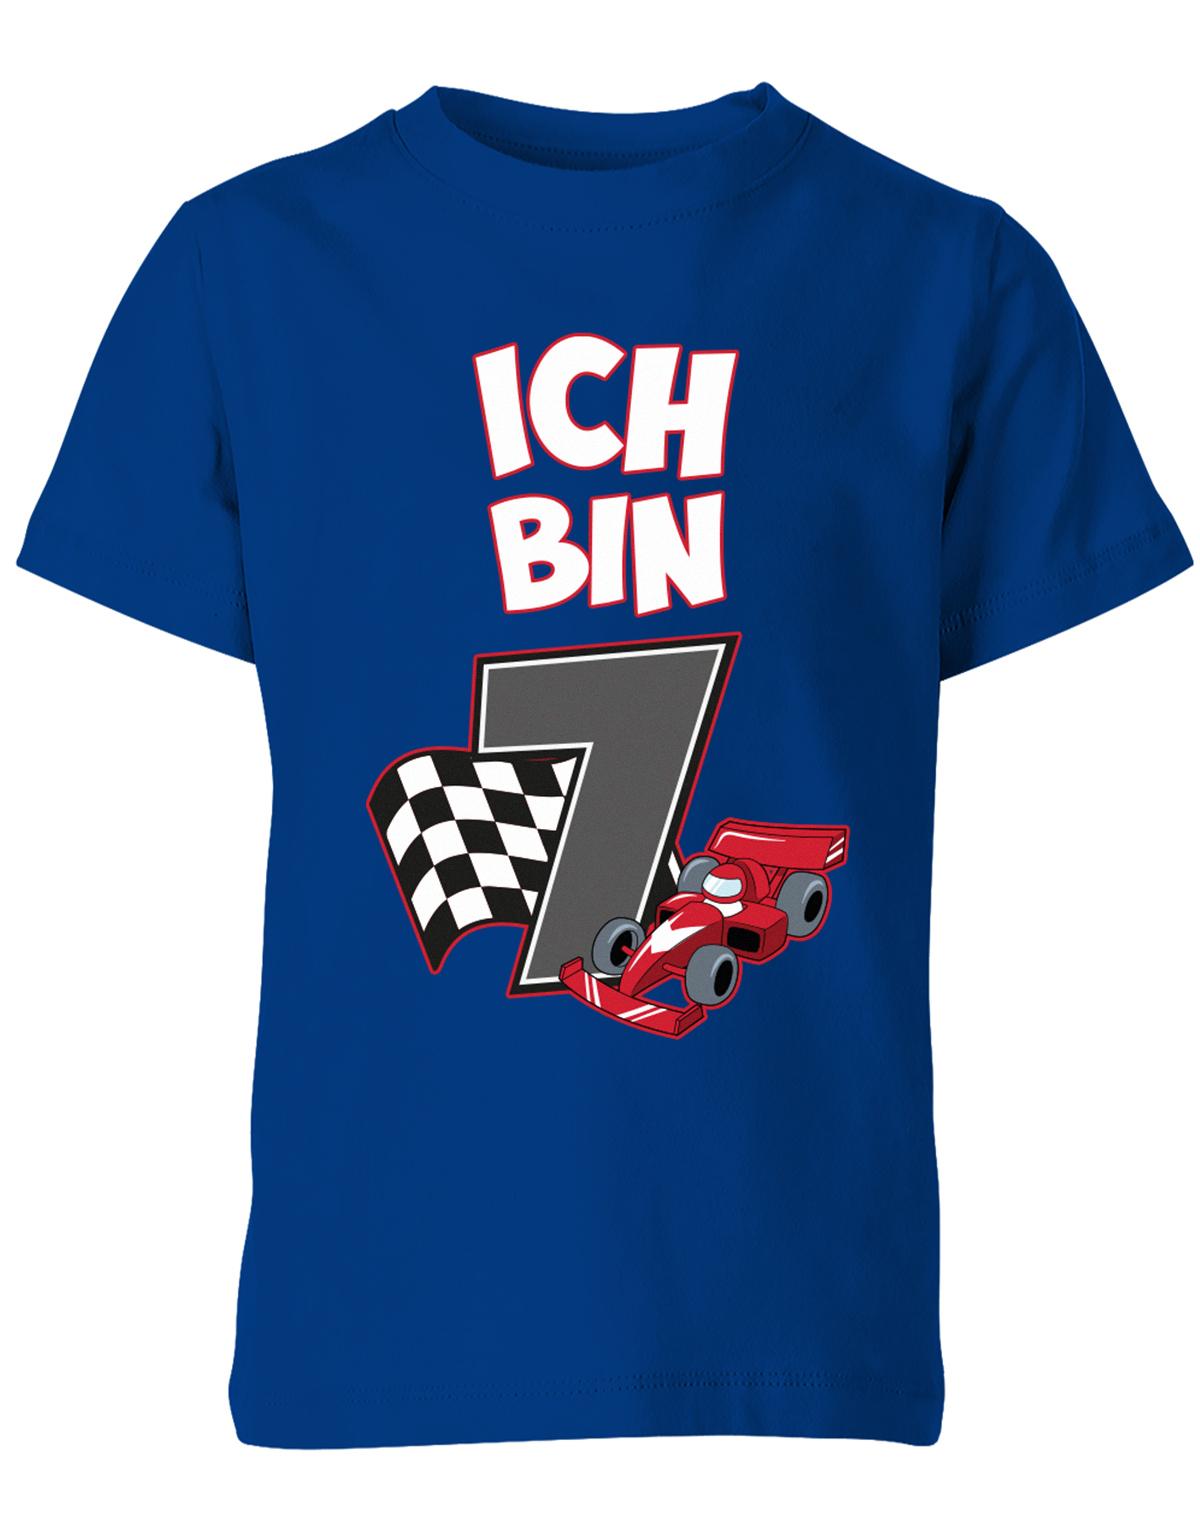 ich-bin-7-autorennen-rennwagen-geburtstag-rennfahrer-kinder-shirt-royalblau